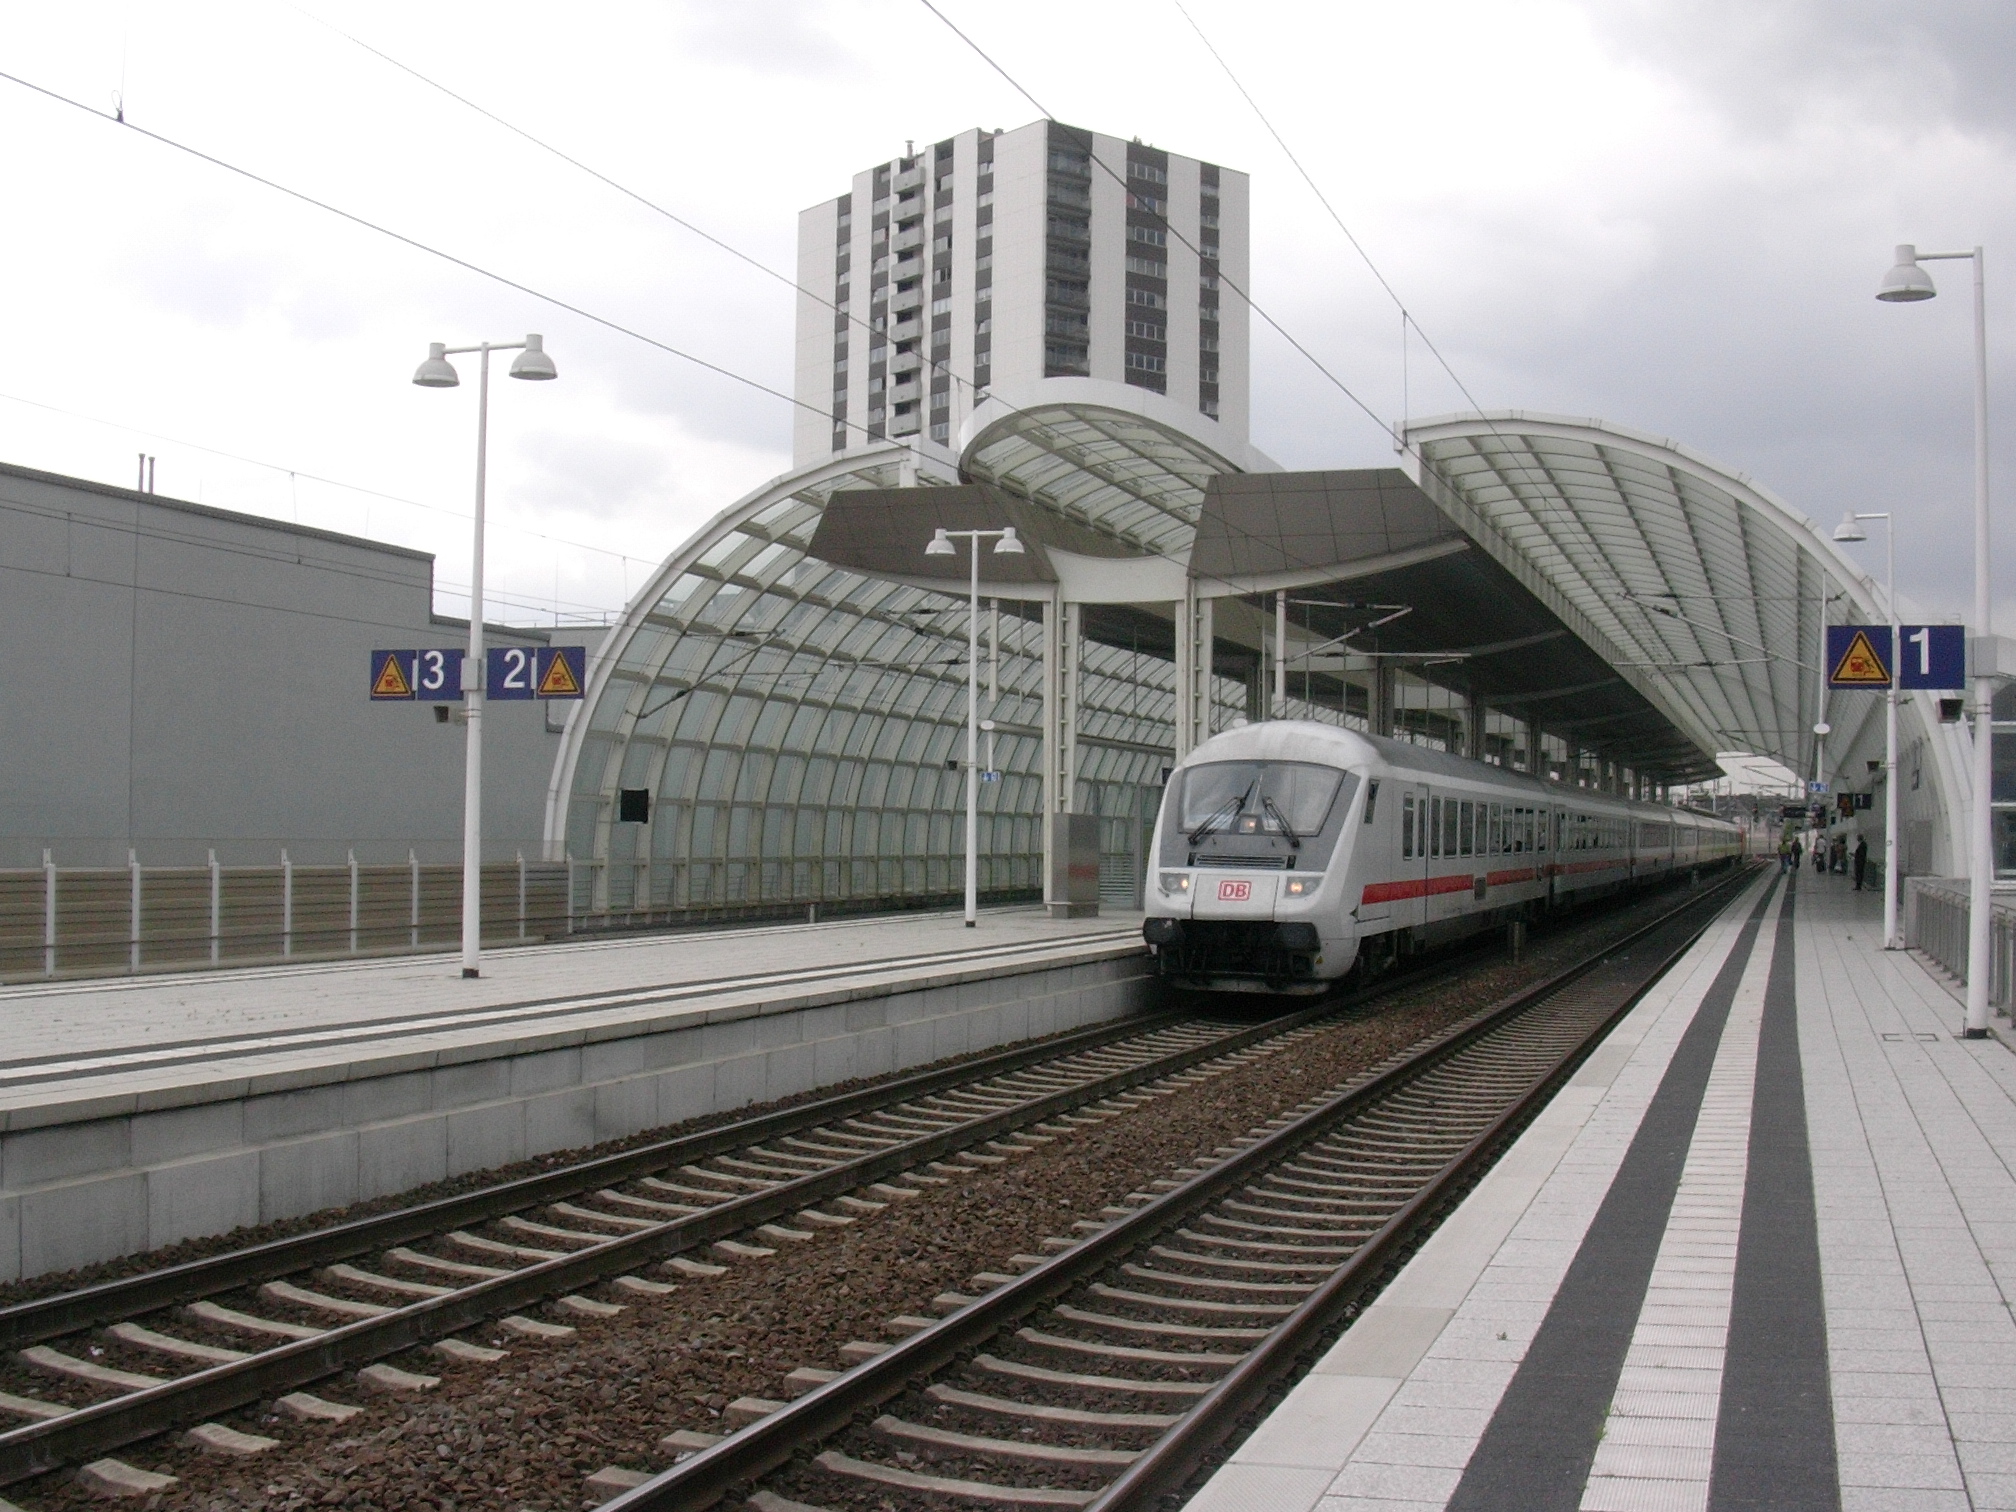 Datei:Ludwigshafen Bahnhof Mitte 01.jpg